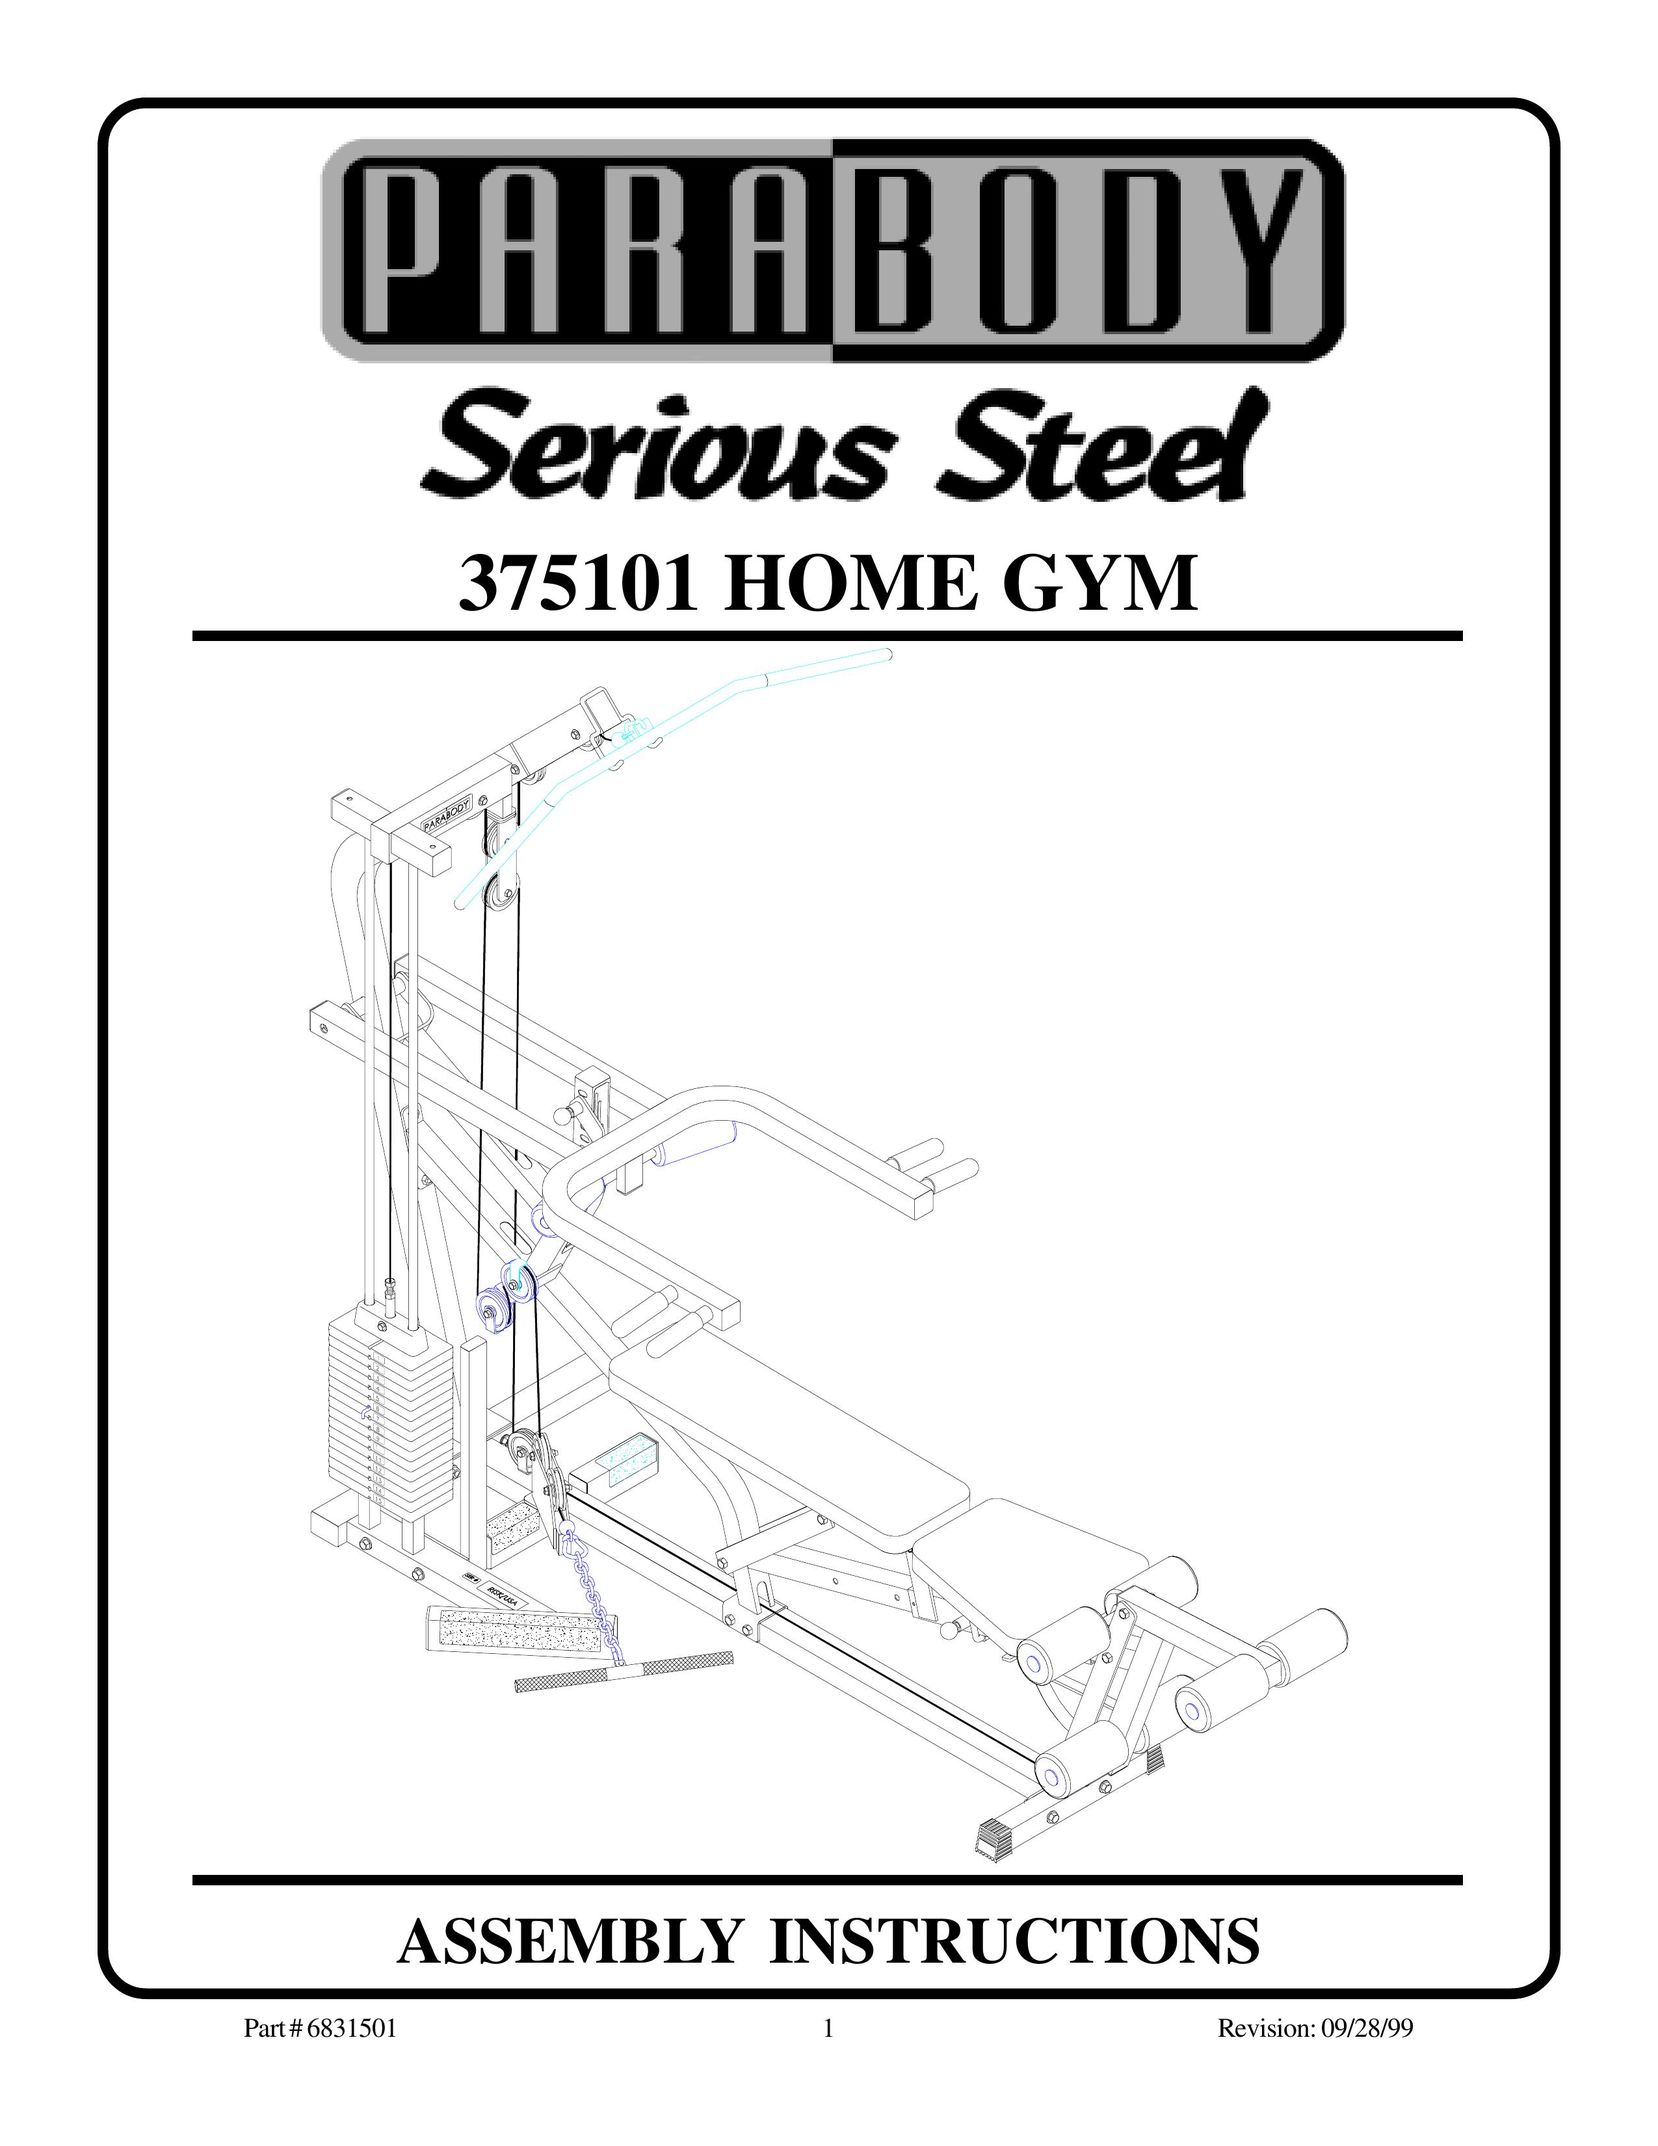 ParaBody 375101 Home Gym User Manual